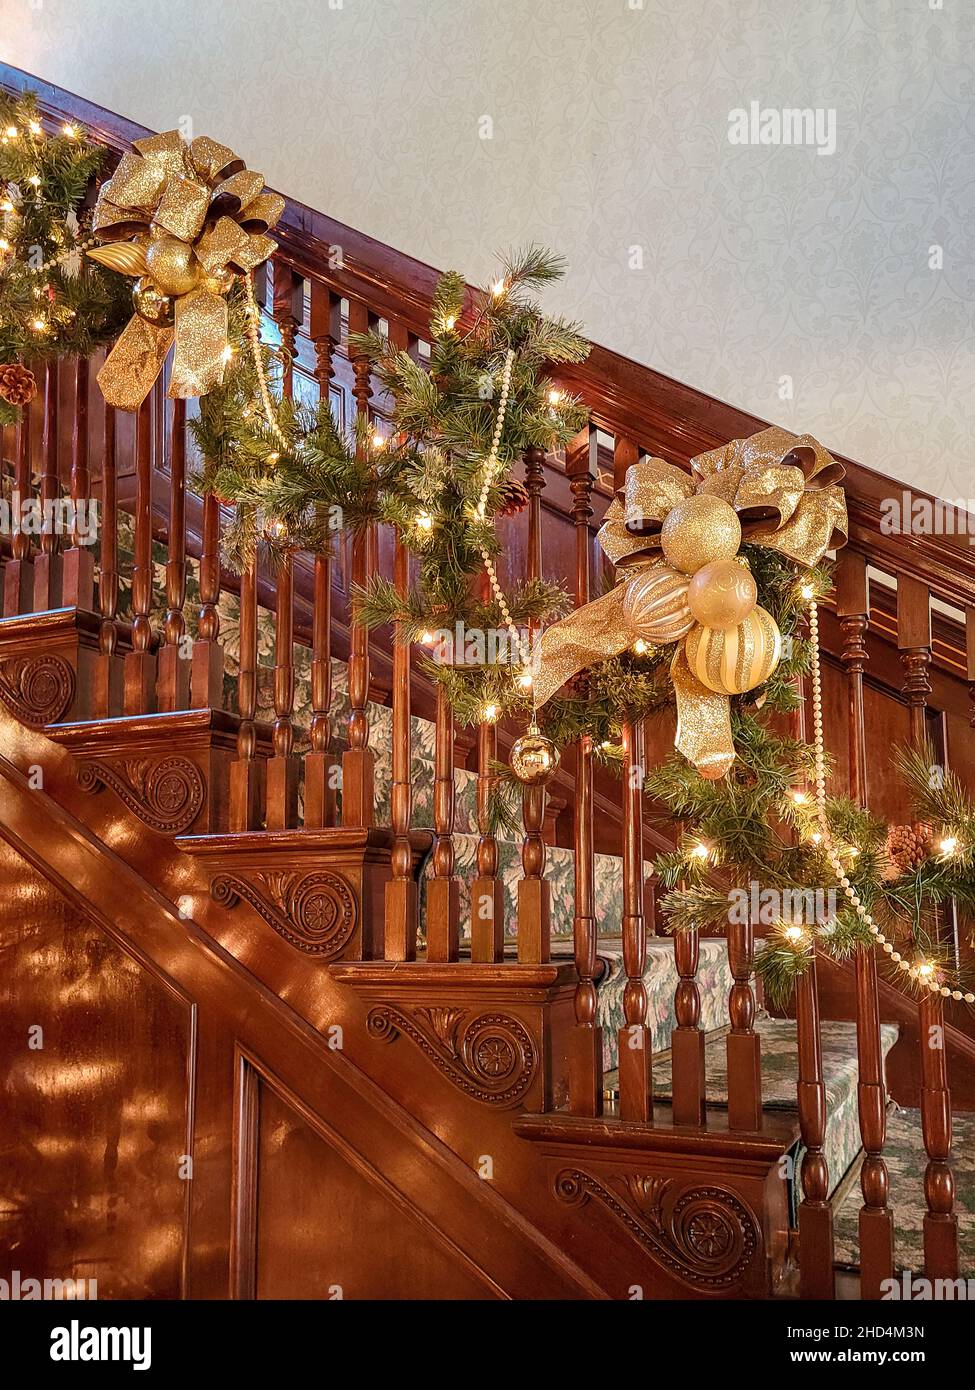 Home interni luci di Natale e fantasia decorazioni in oro su una scala in legno Foto Stock